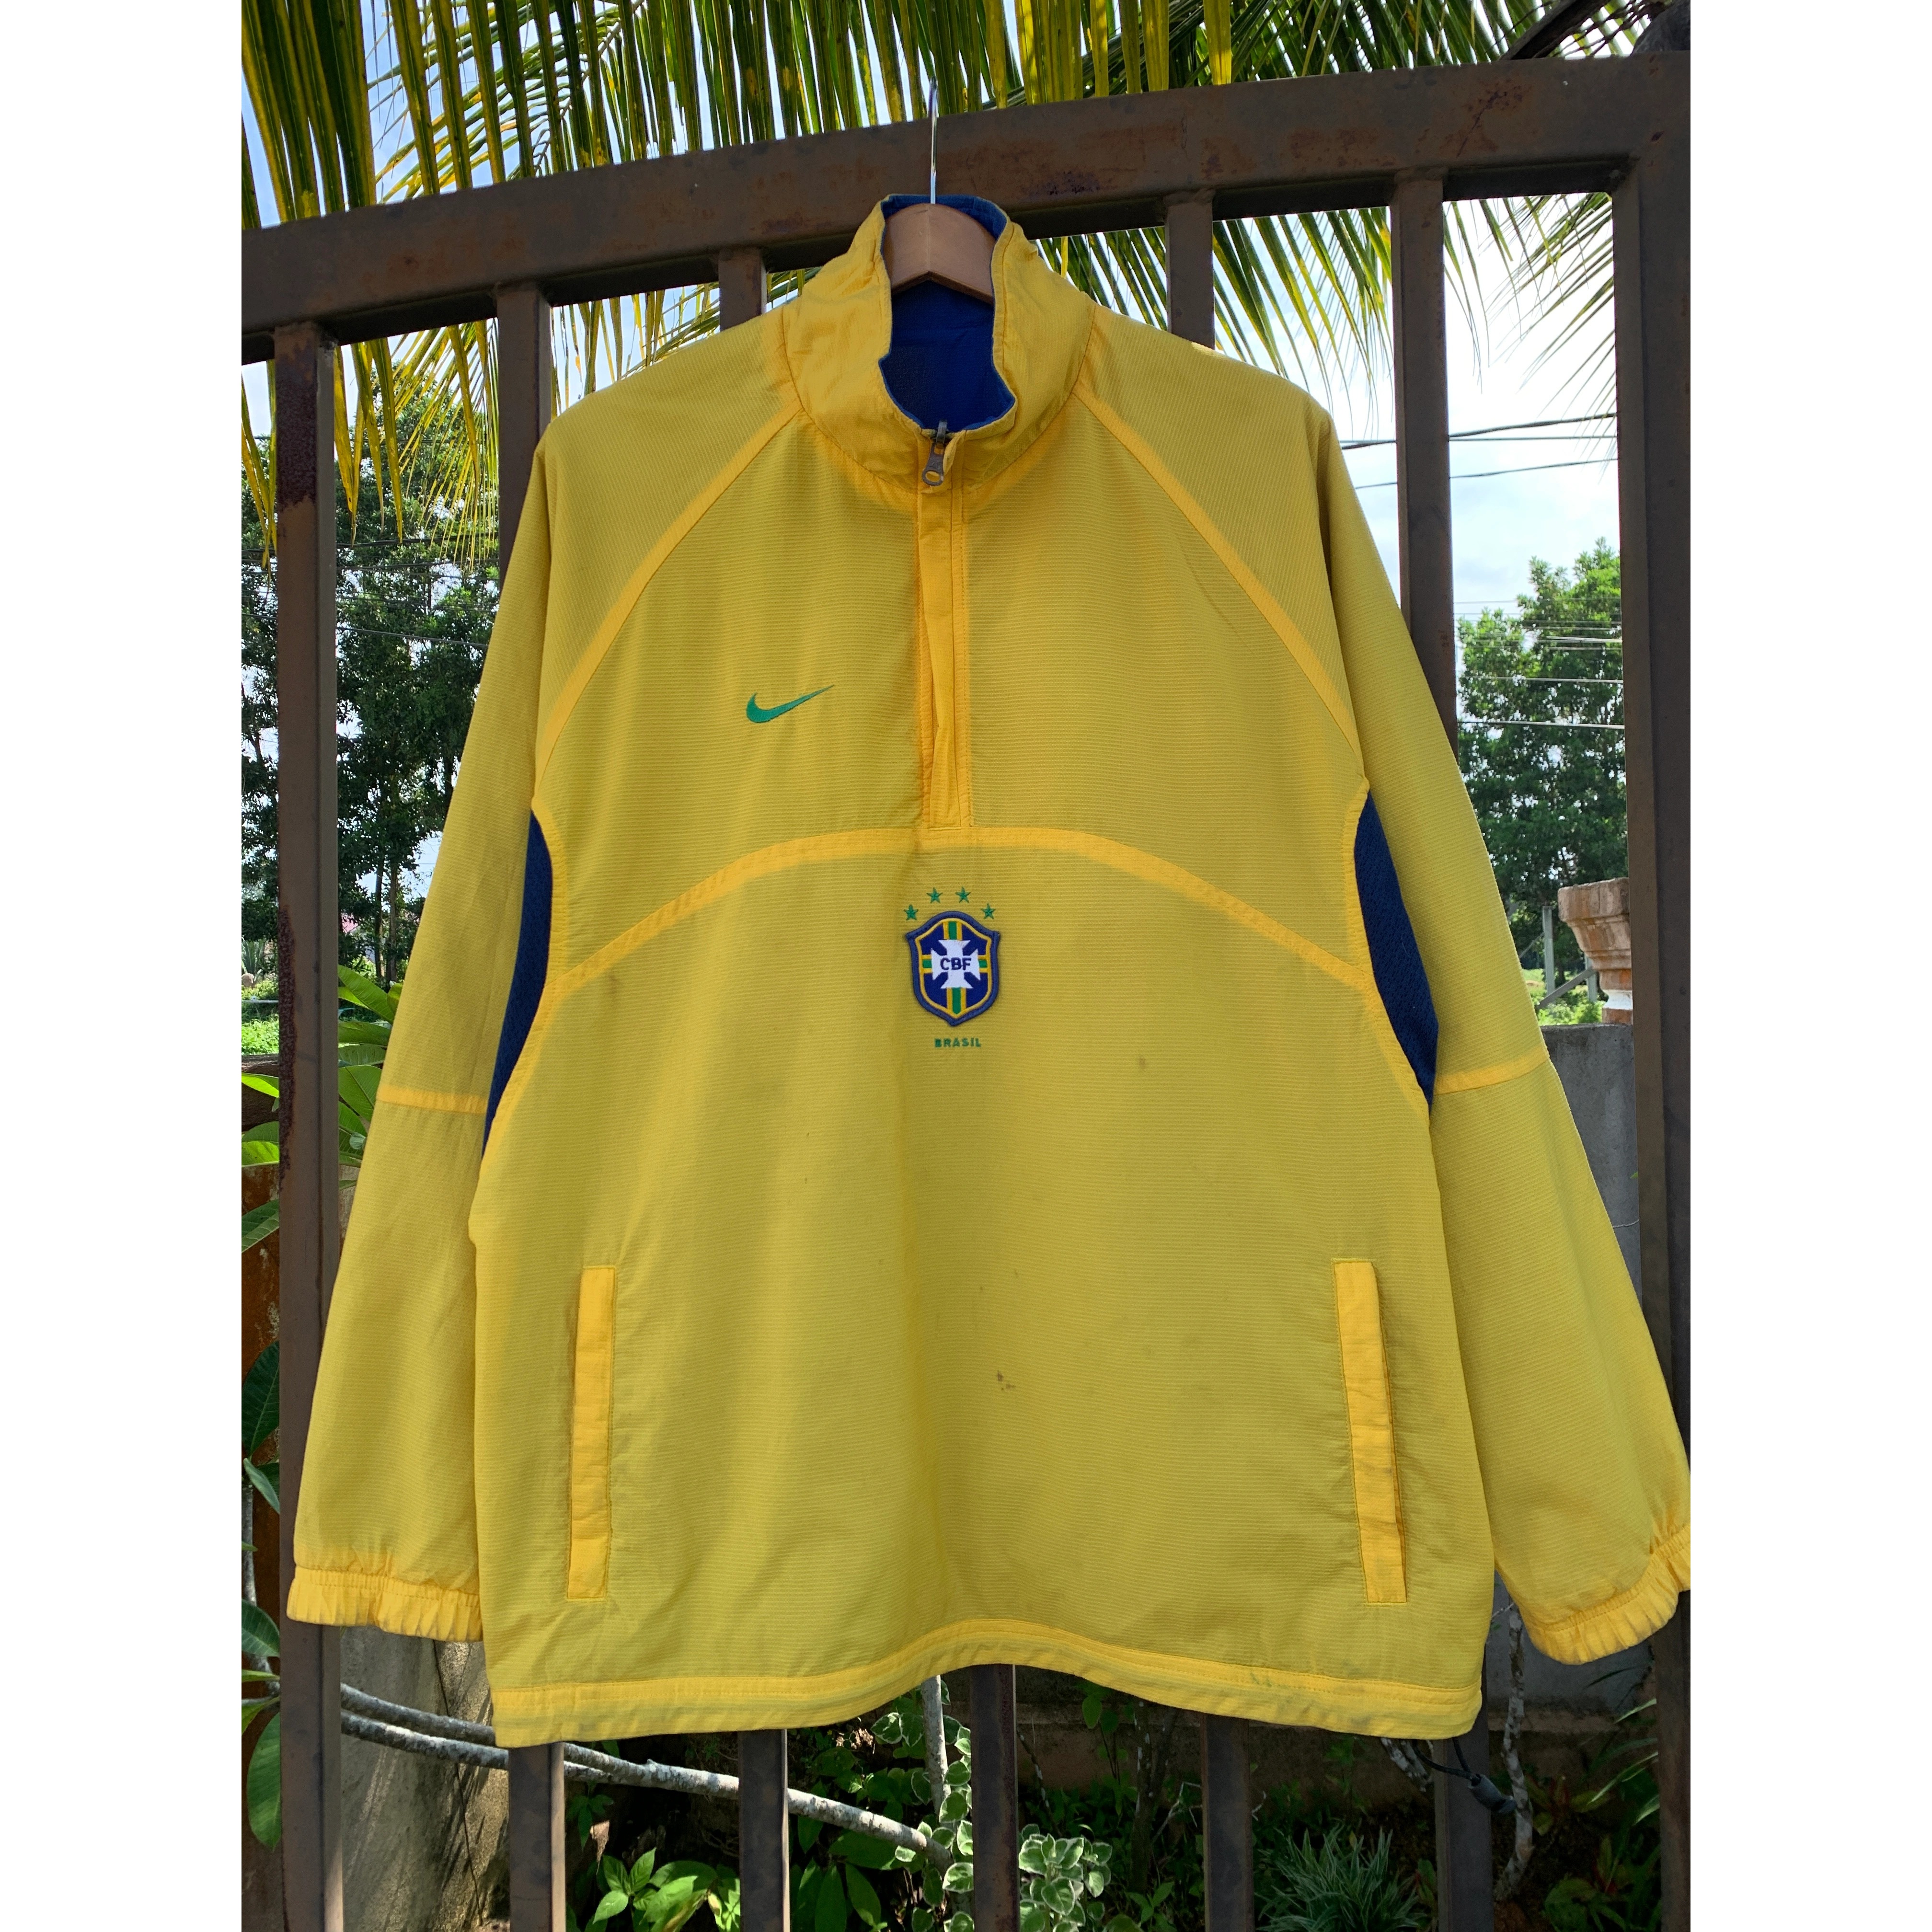 Nike Vintage 90s Nike Brasil Reversible Half Zipper Jacket, deeganungbundle